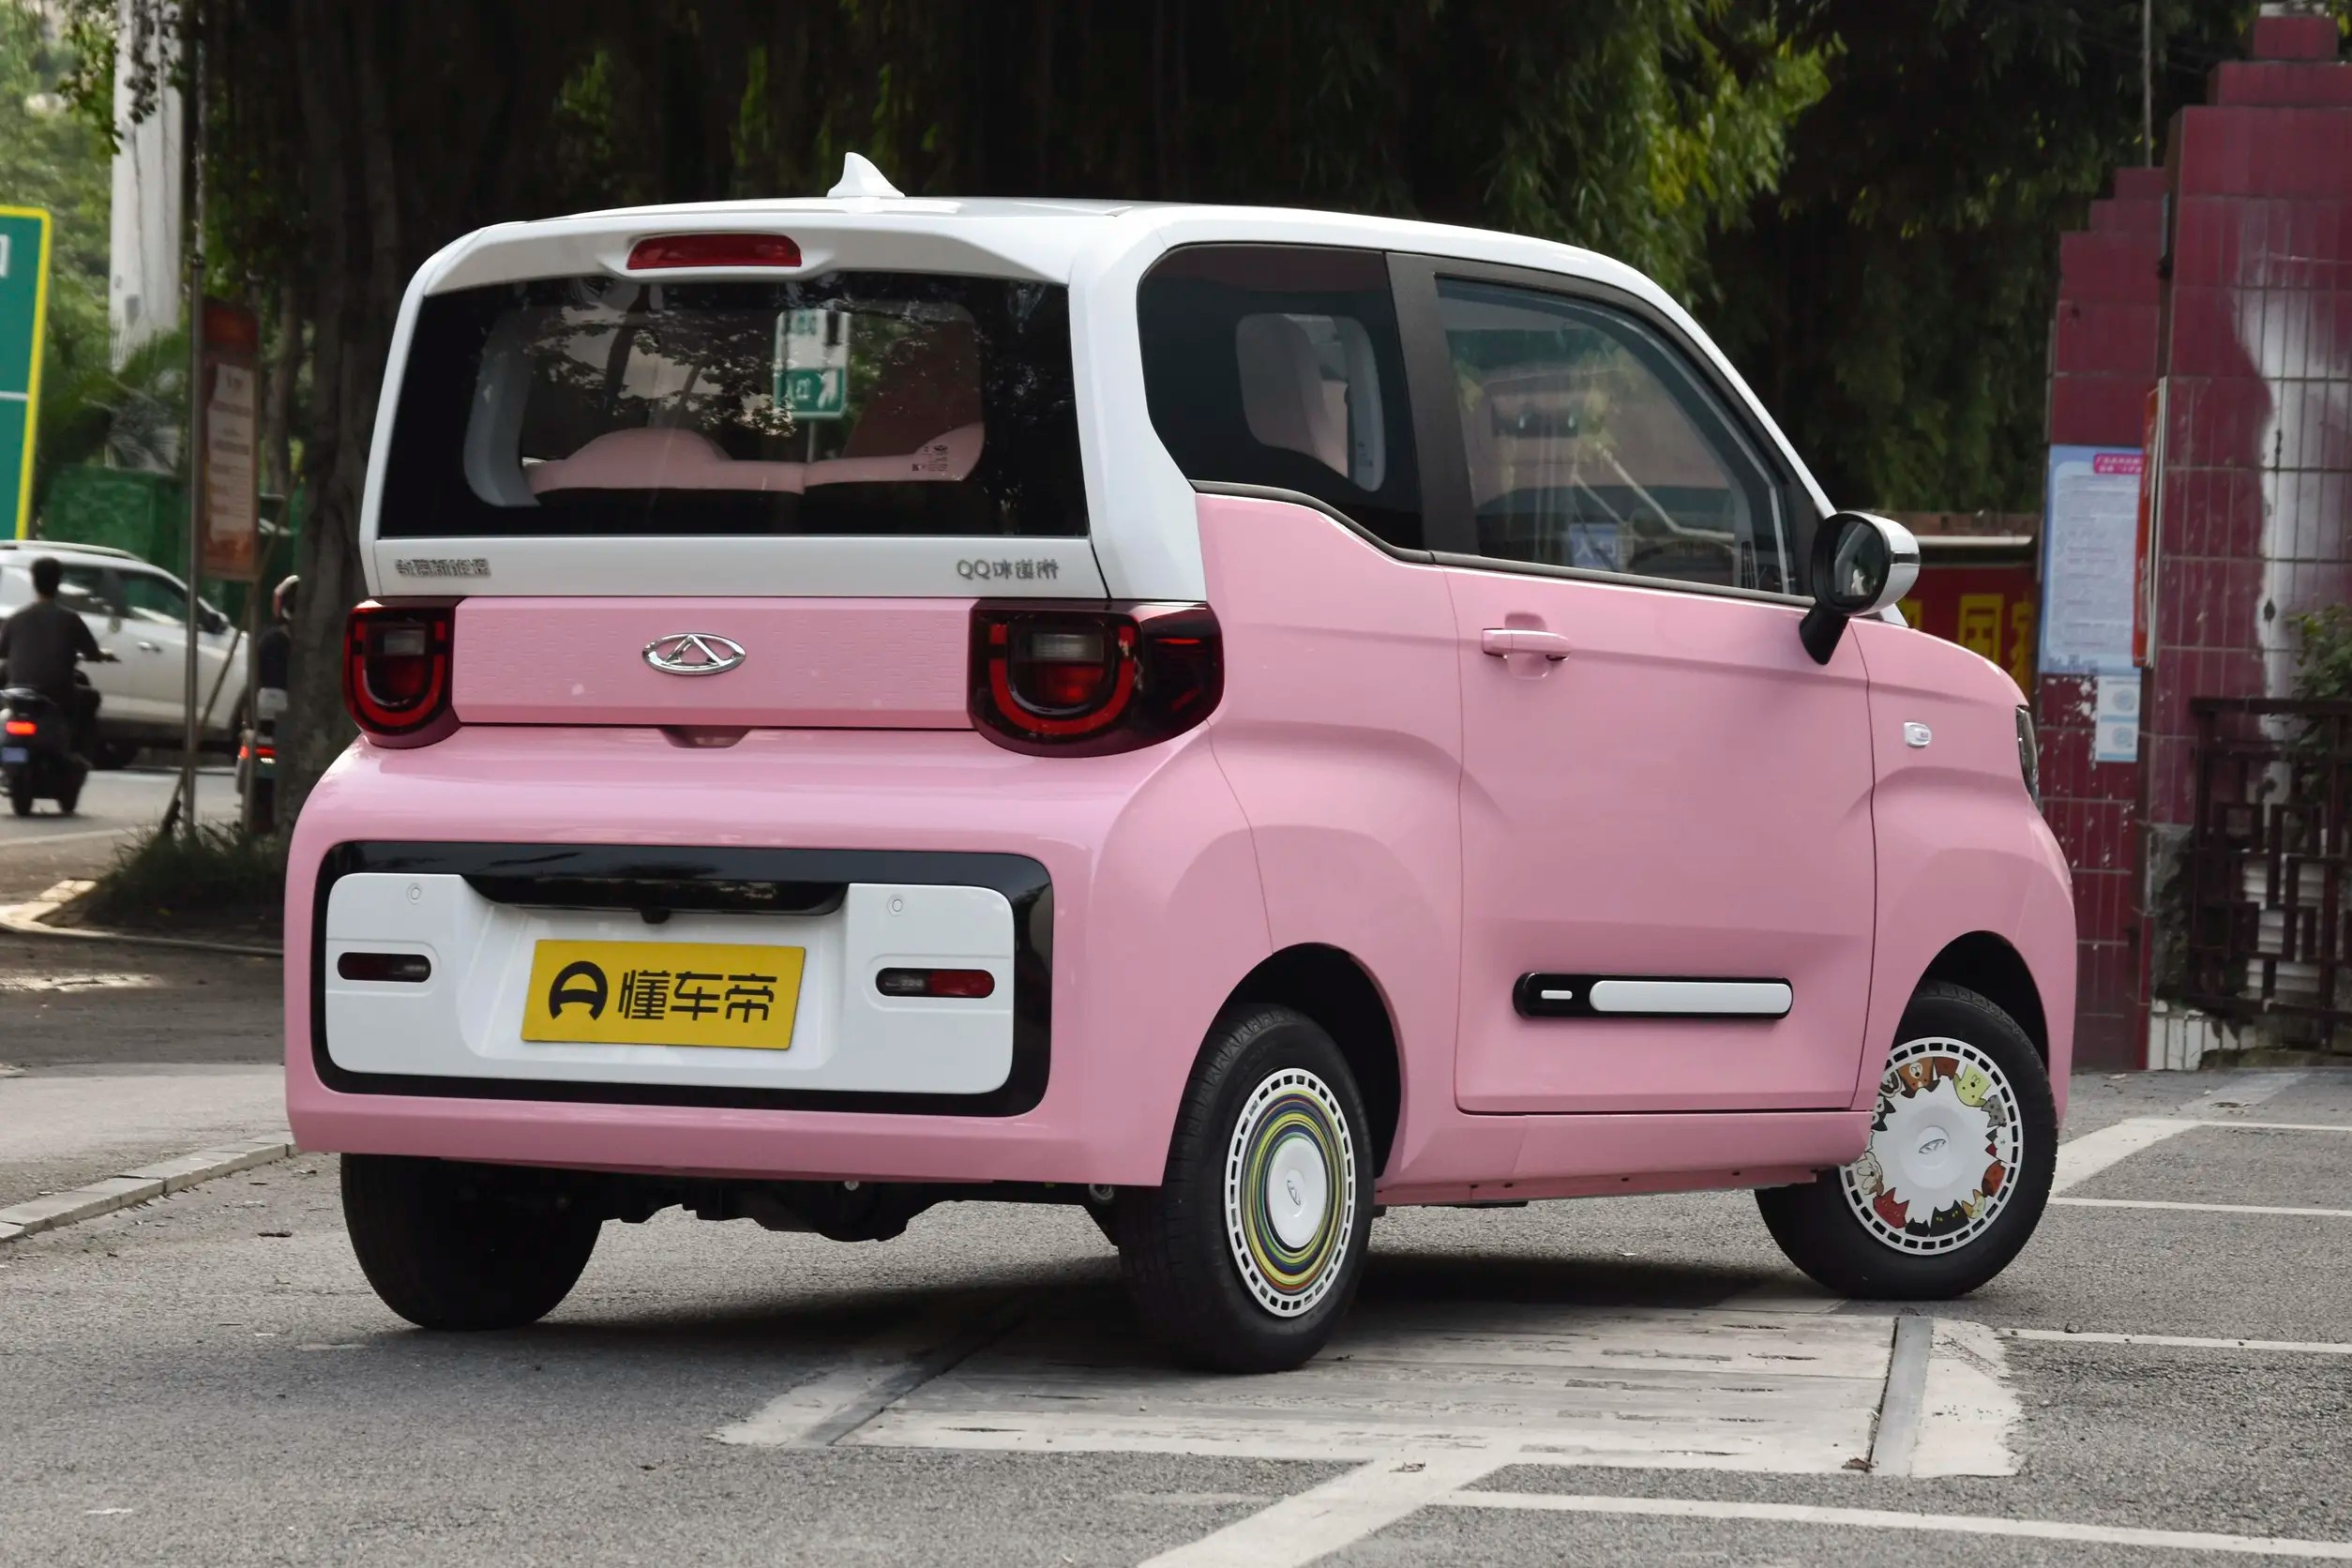 奇瑞qq冰淇淋桃欢喜,定位微型车,计划于6月21日上市